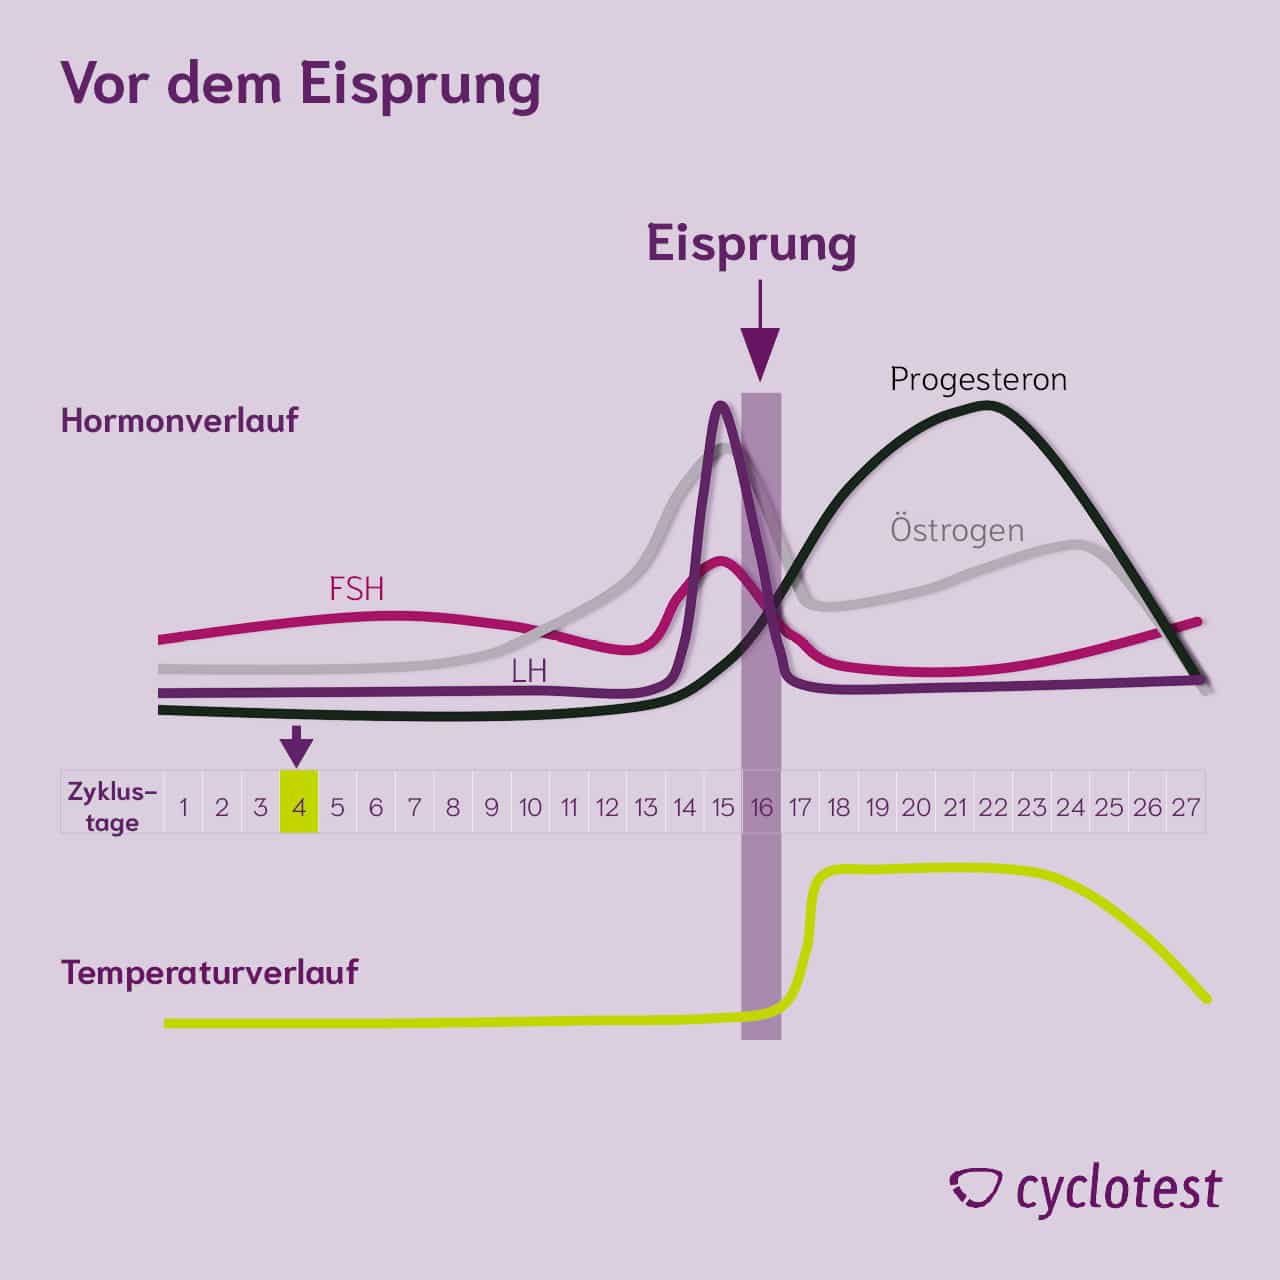 Darstellung des Verlaufs der Hormone FSH, LH, Progesteron und Östrogen sowie der Temperatur in der ersten Zyklushälfte vor dem Eisprung.